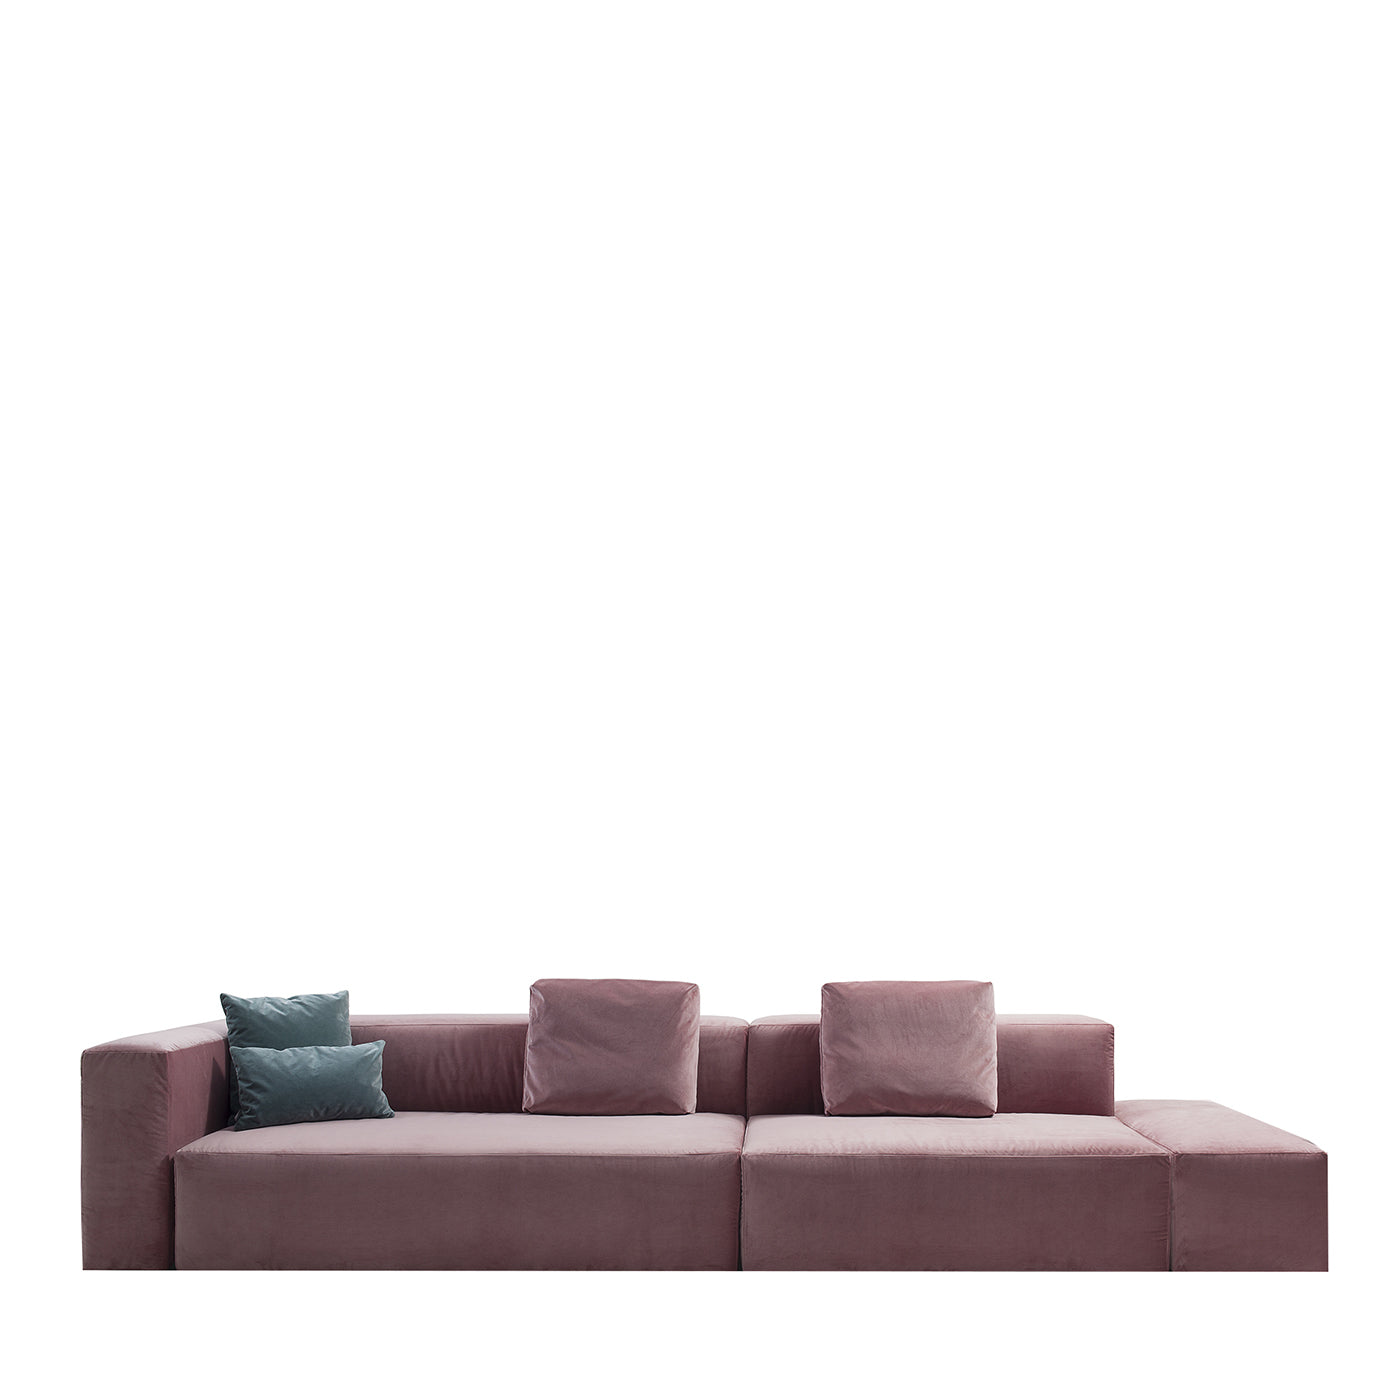 Cube Pink Sofa by Gianluigi Landoni - Main view